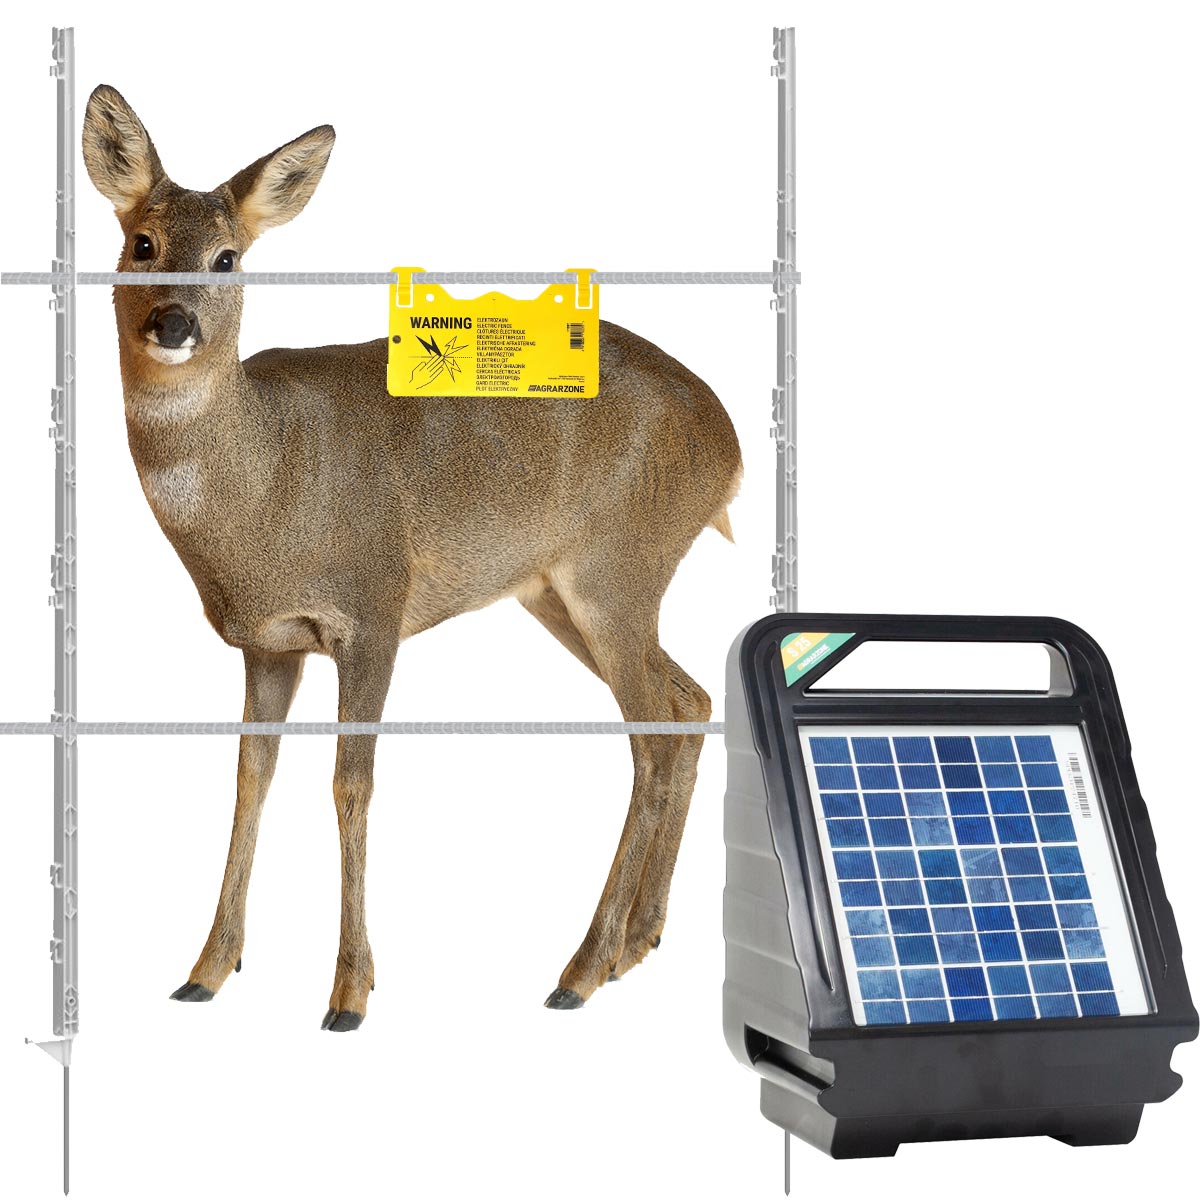 Rehzaun Komplett Set 12V Solar, Band für 200 m Wildzaun